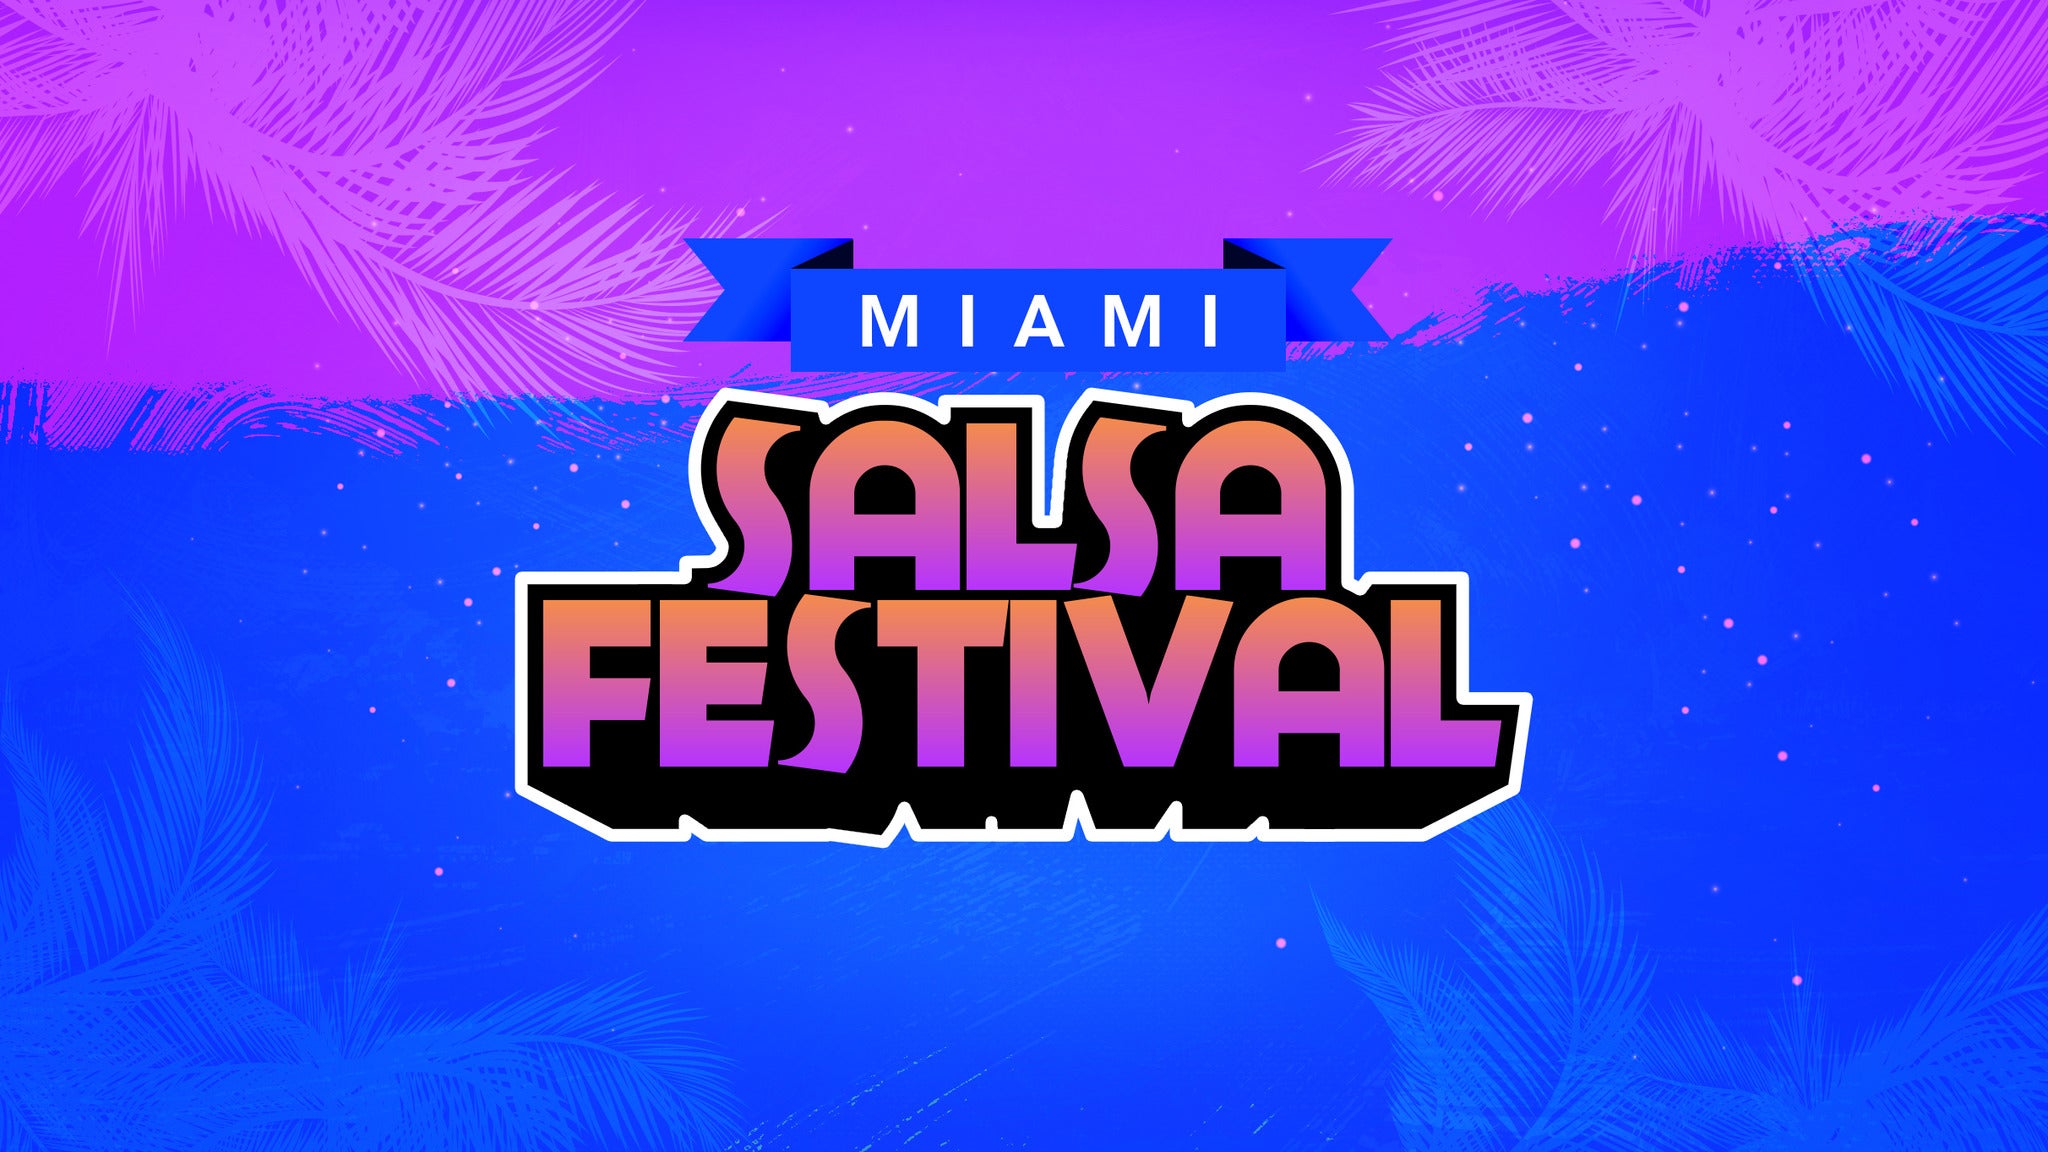 Miami Salsa Festival